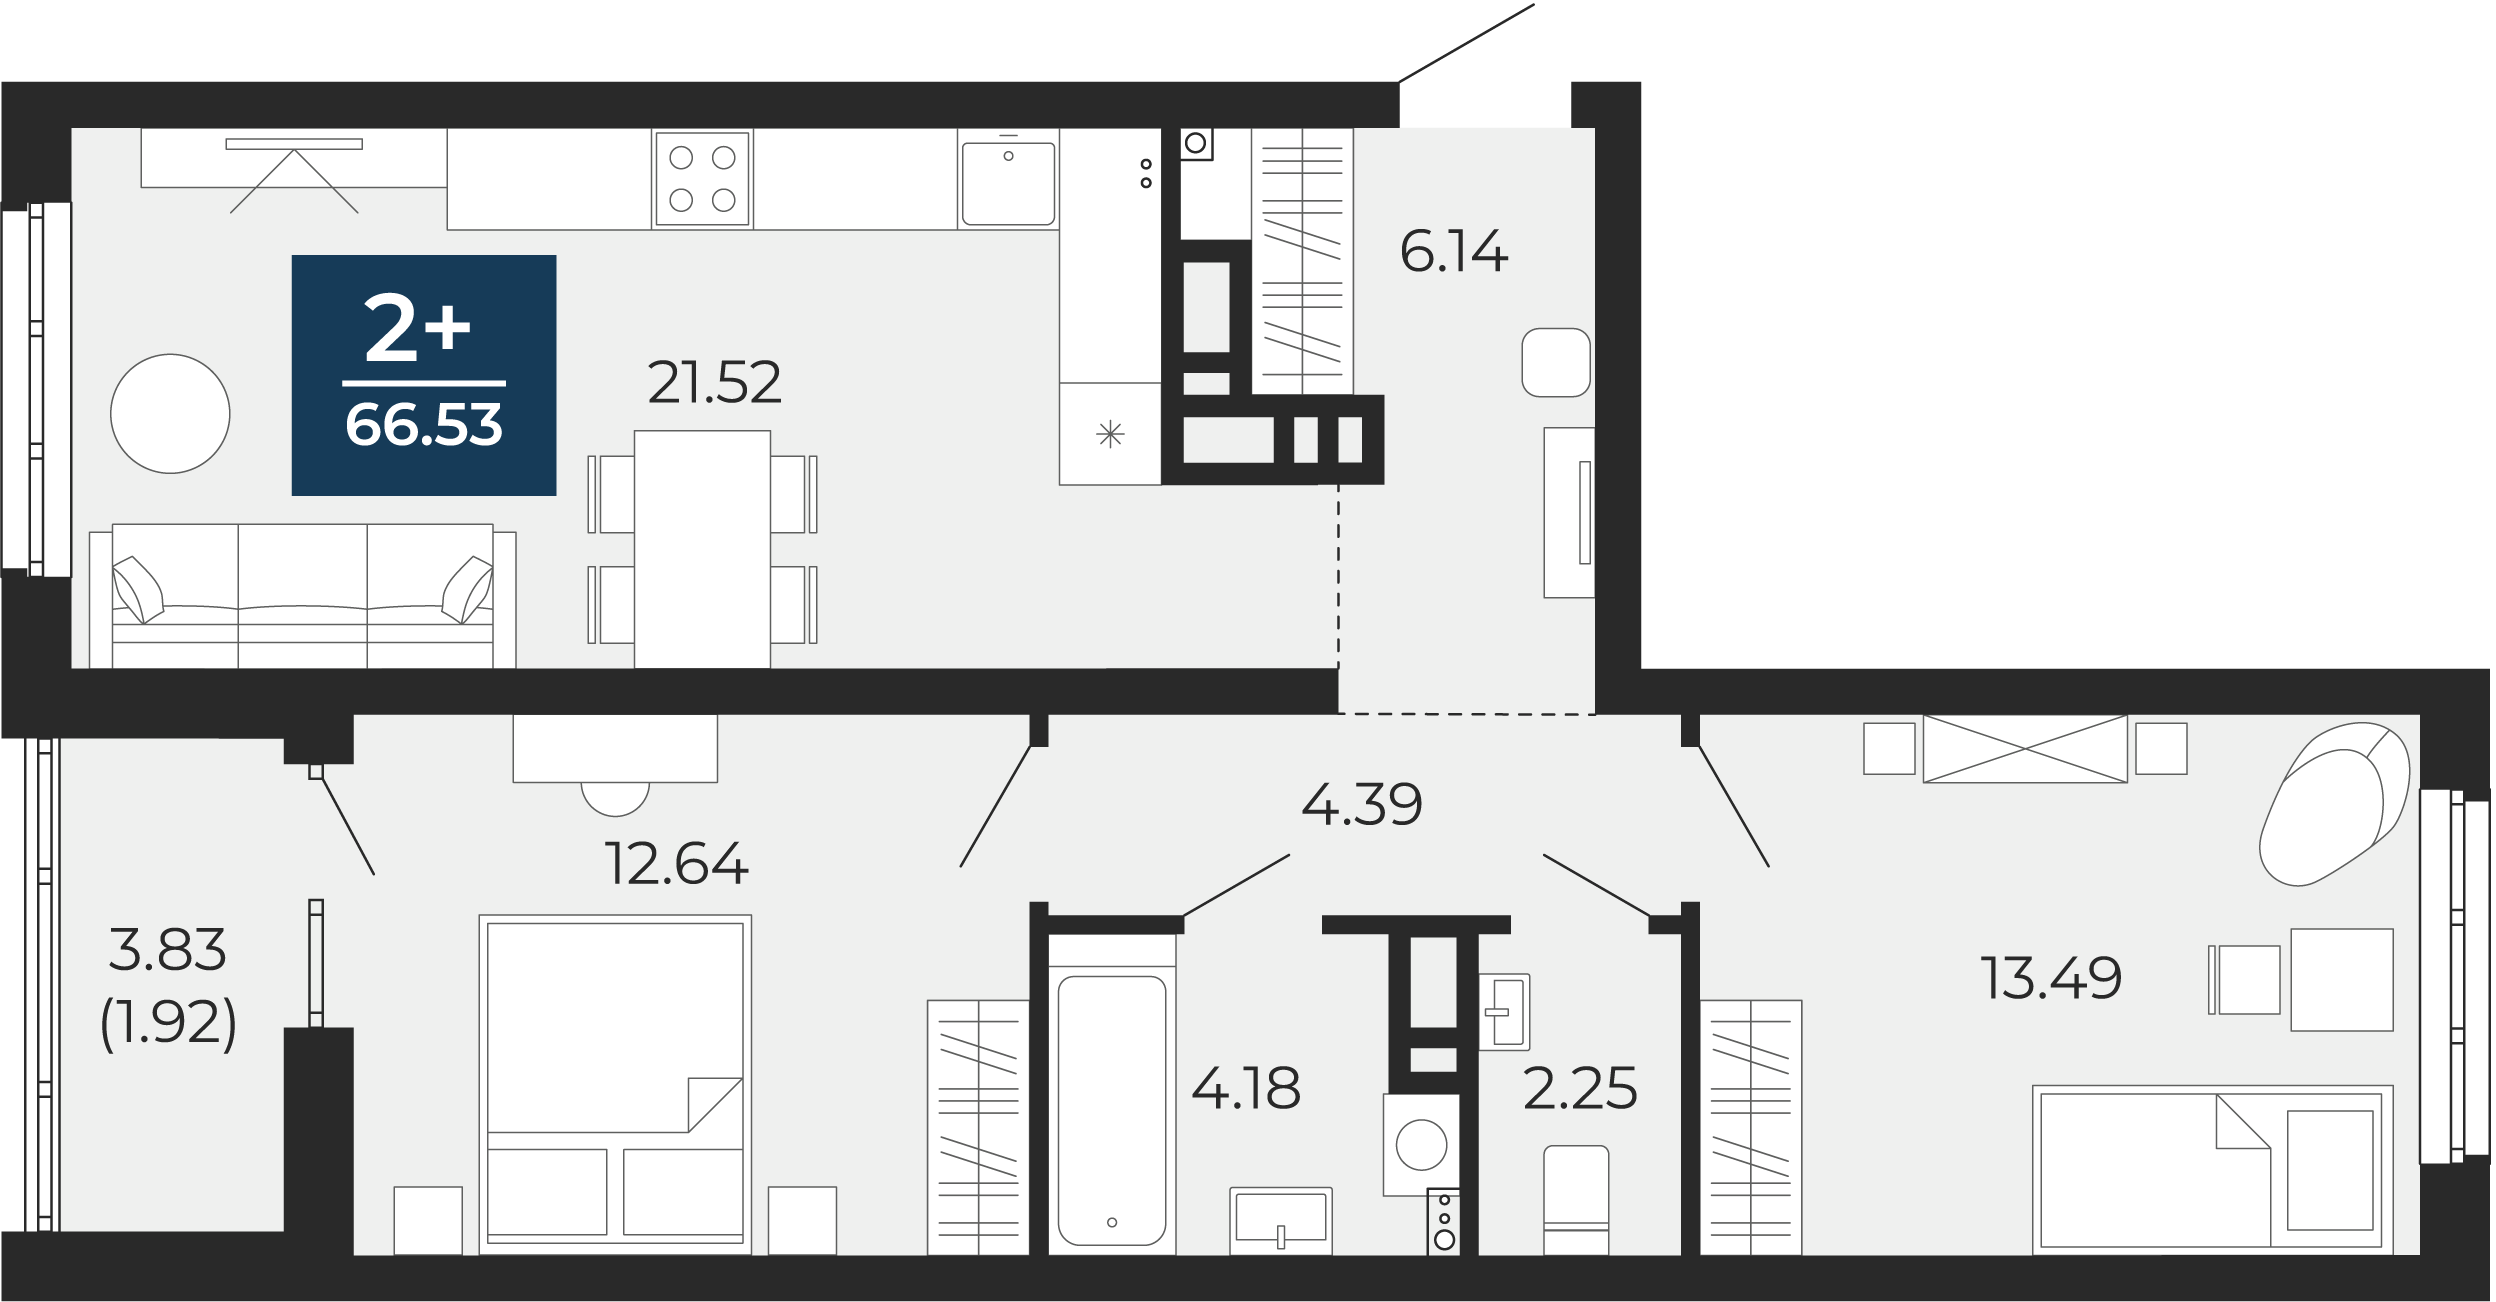 Квартира № 176, 2-комнатная, 66.53 кв. м, 11 этаж